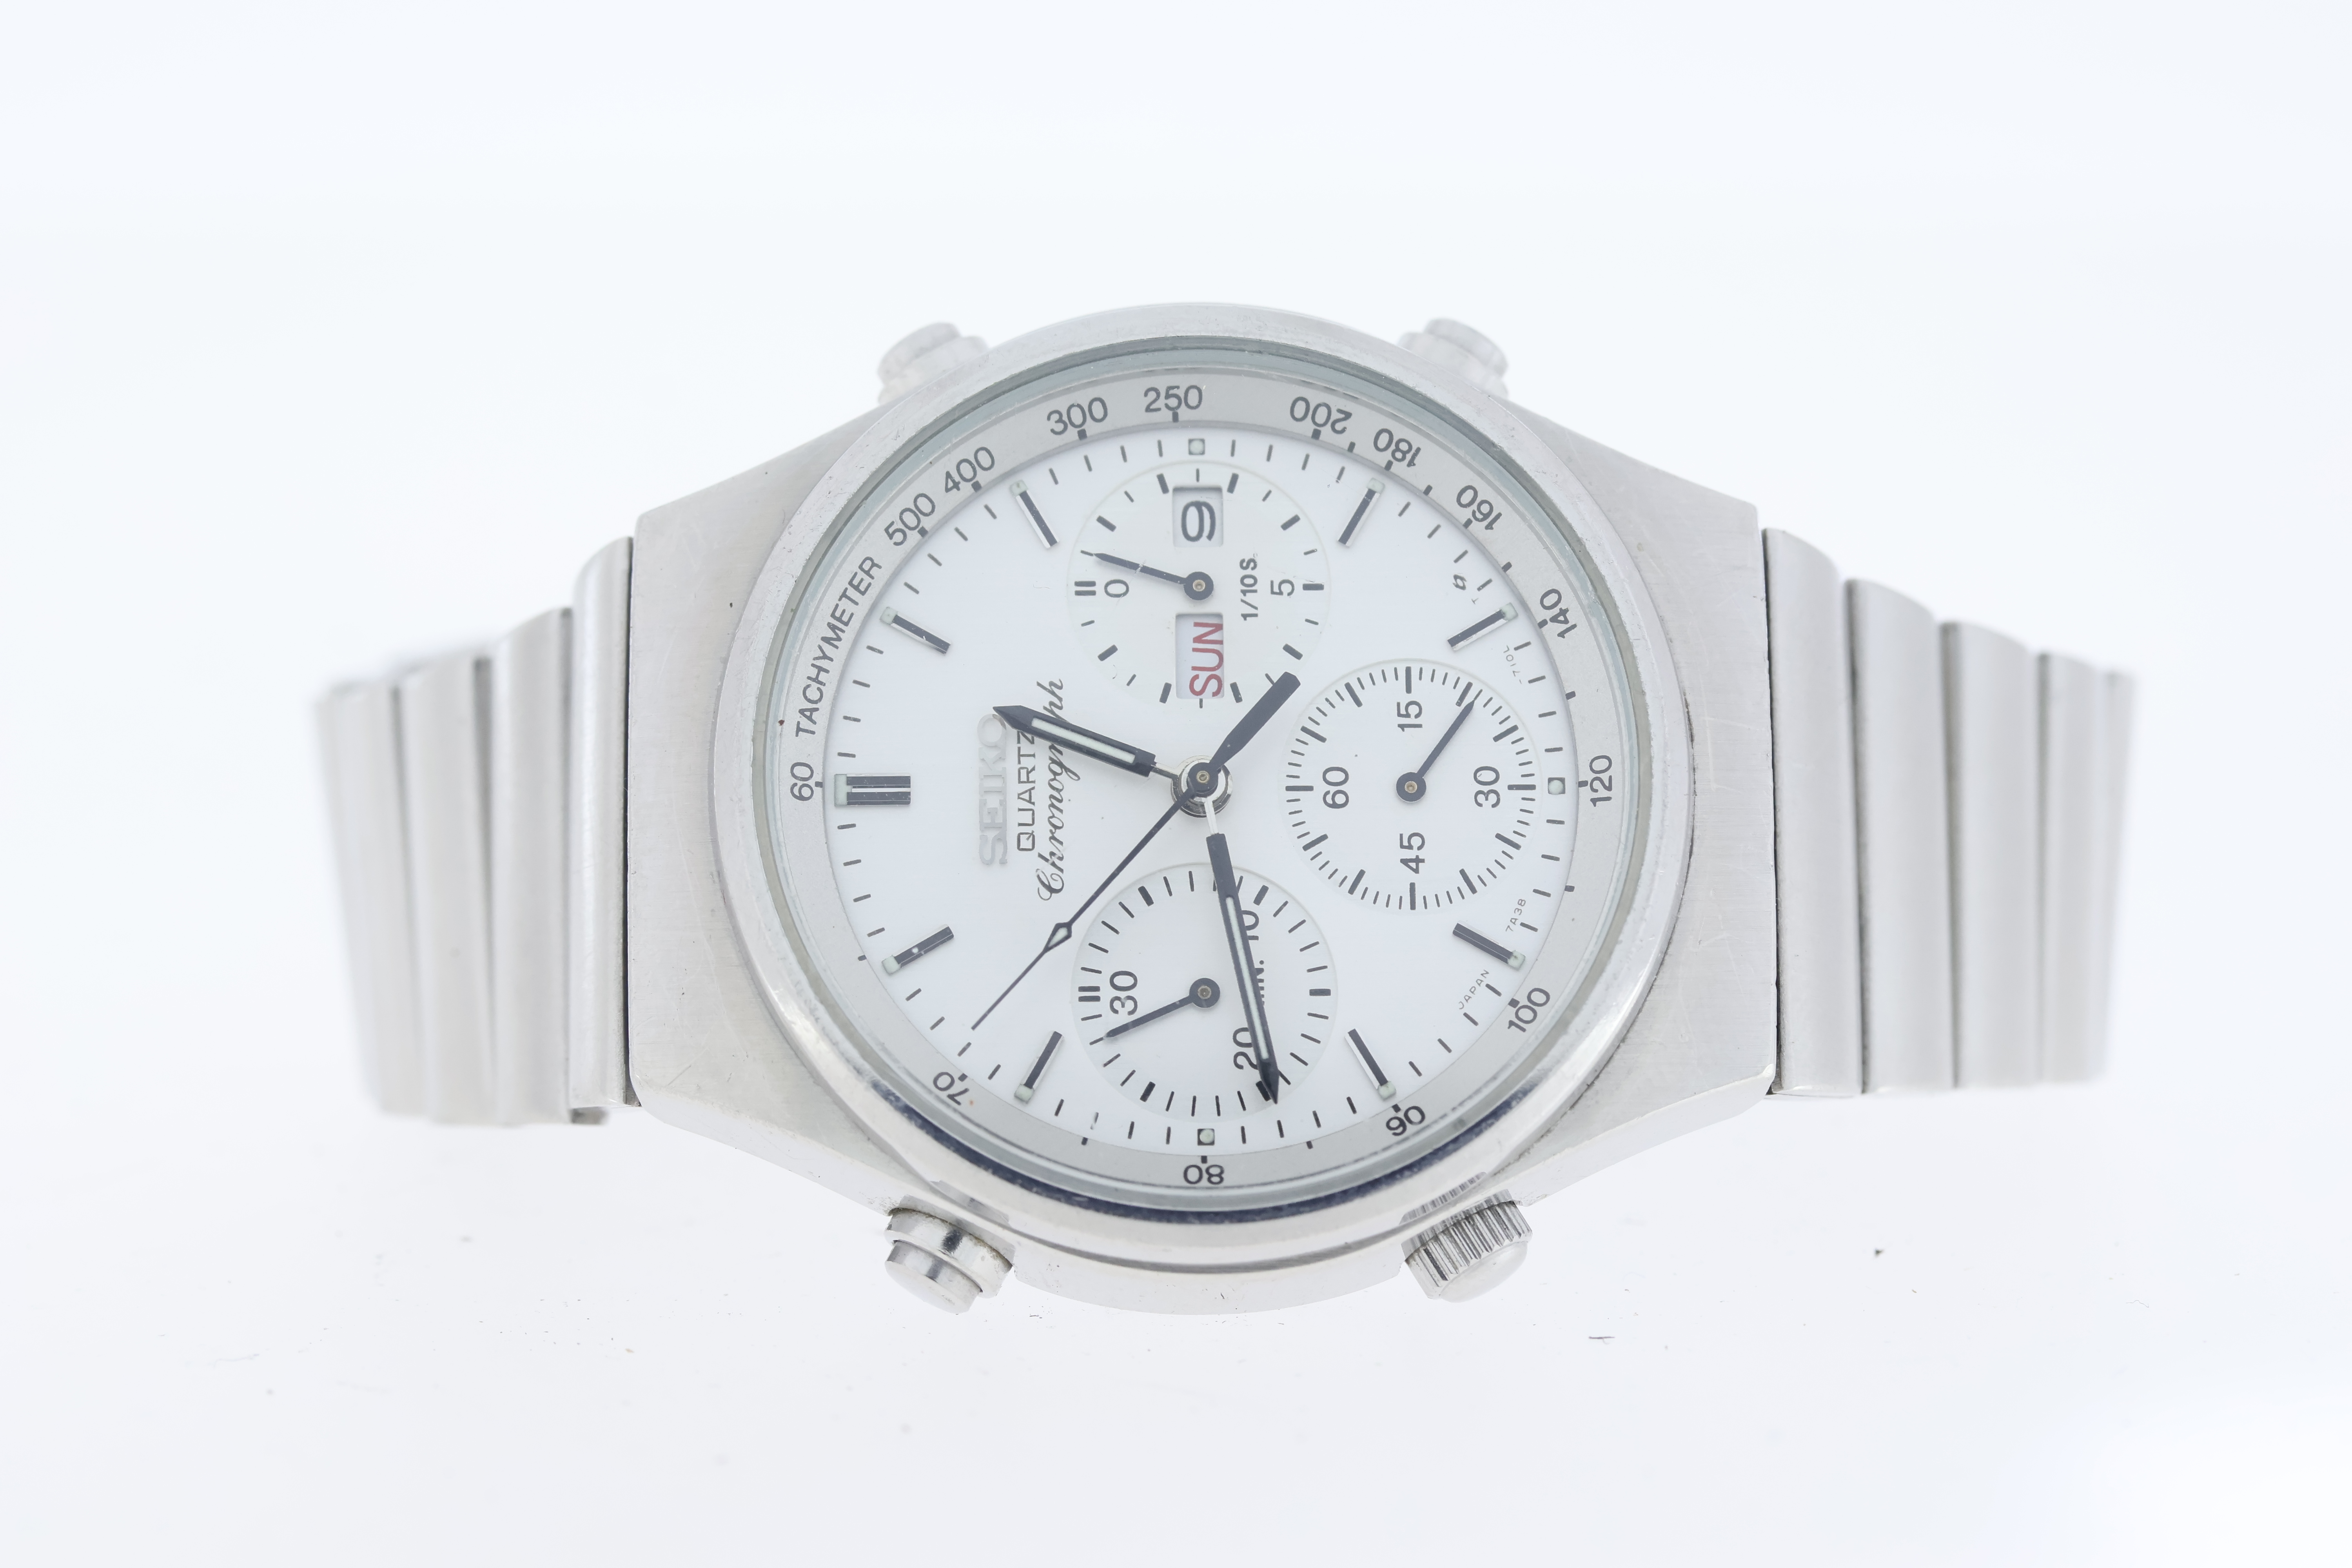 Job lot of 5 wristwatches. Including a Seiko sportmatic automatic, Seiko quartz chronograph, - Image 4 of 6